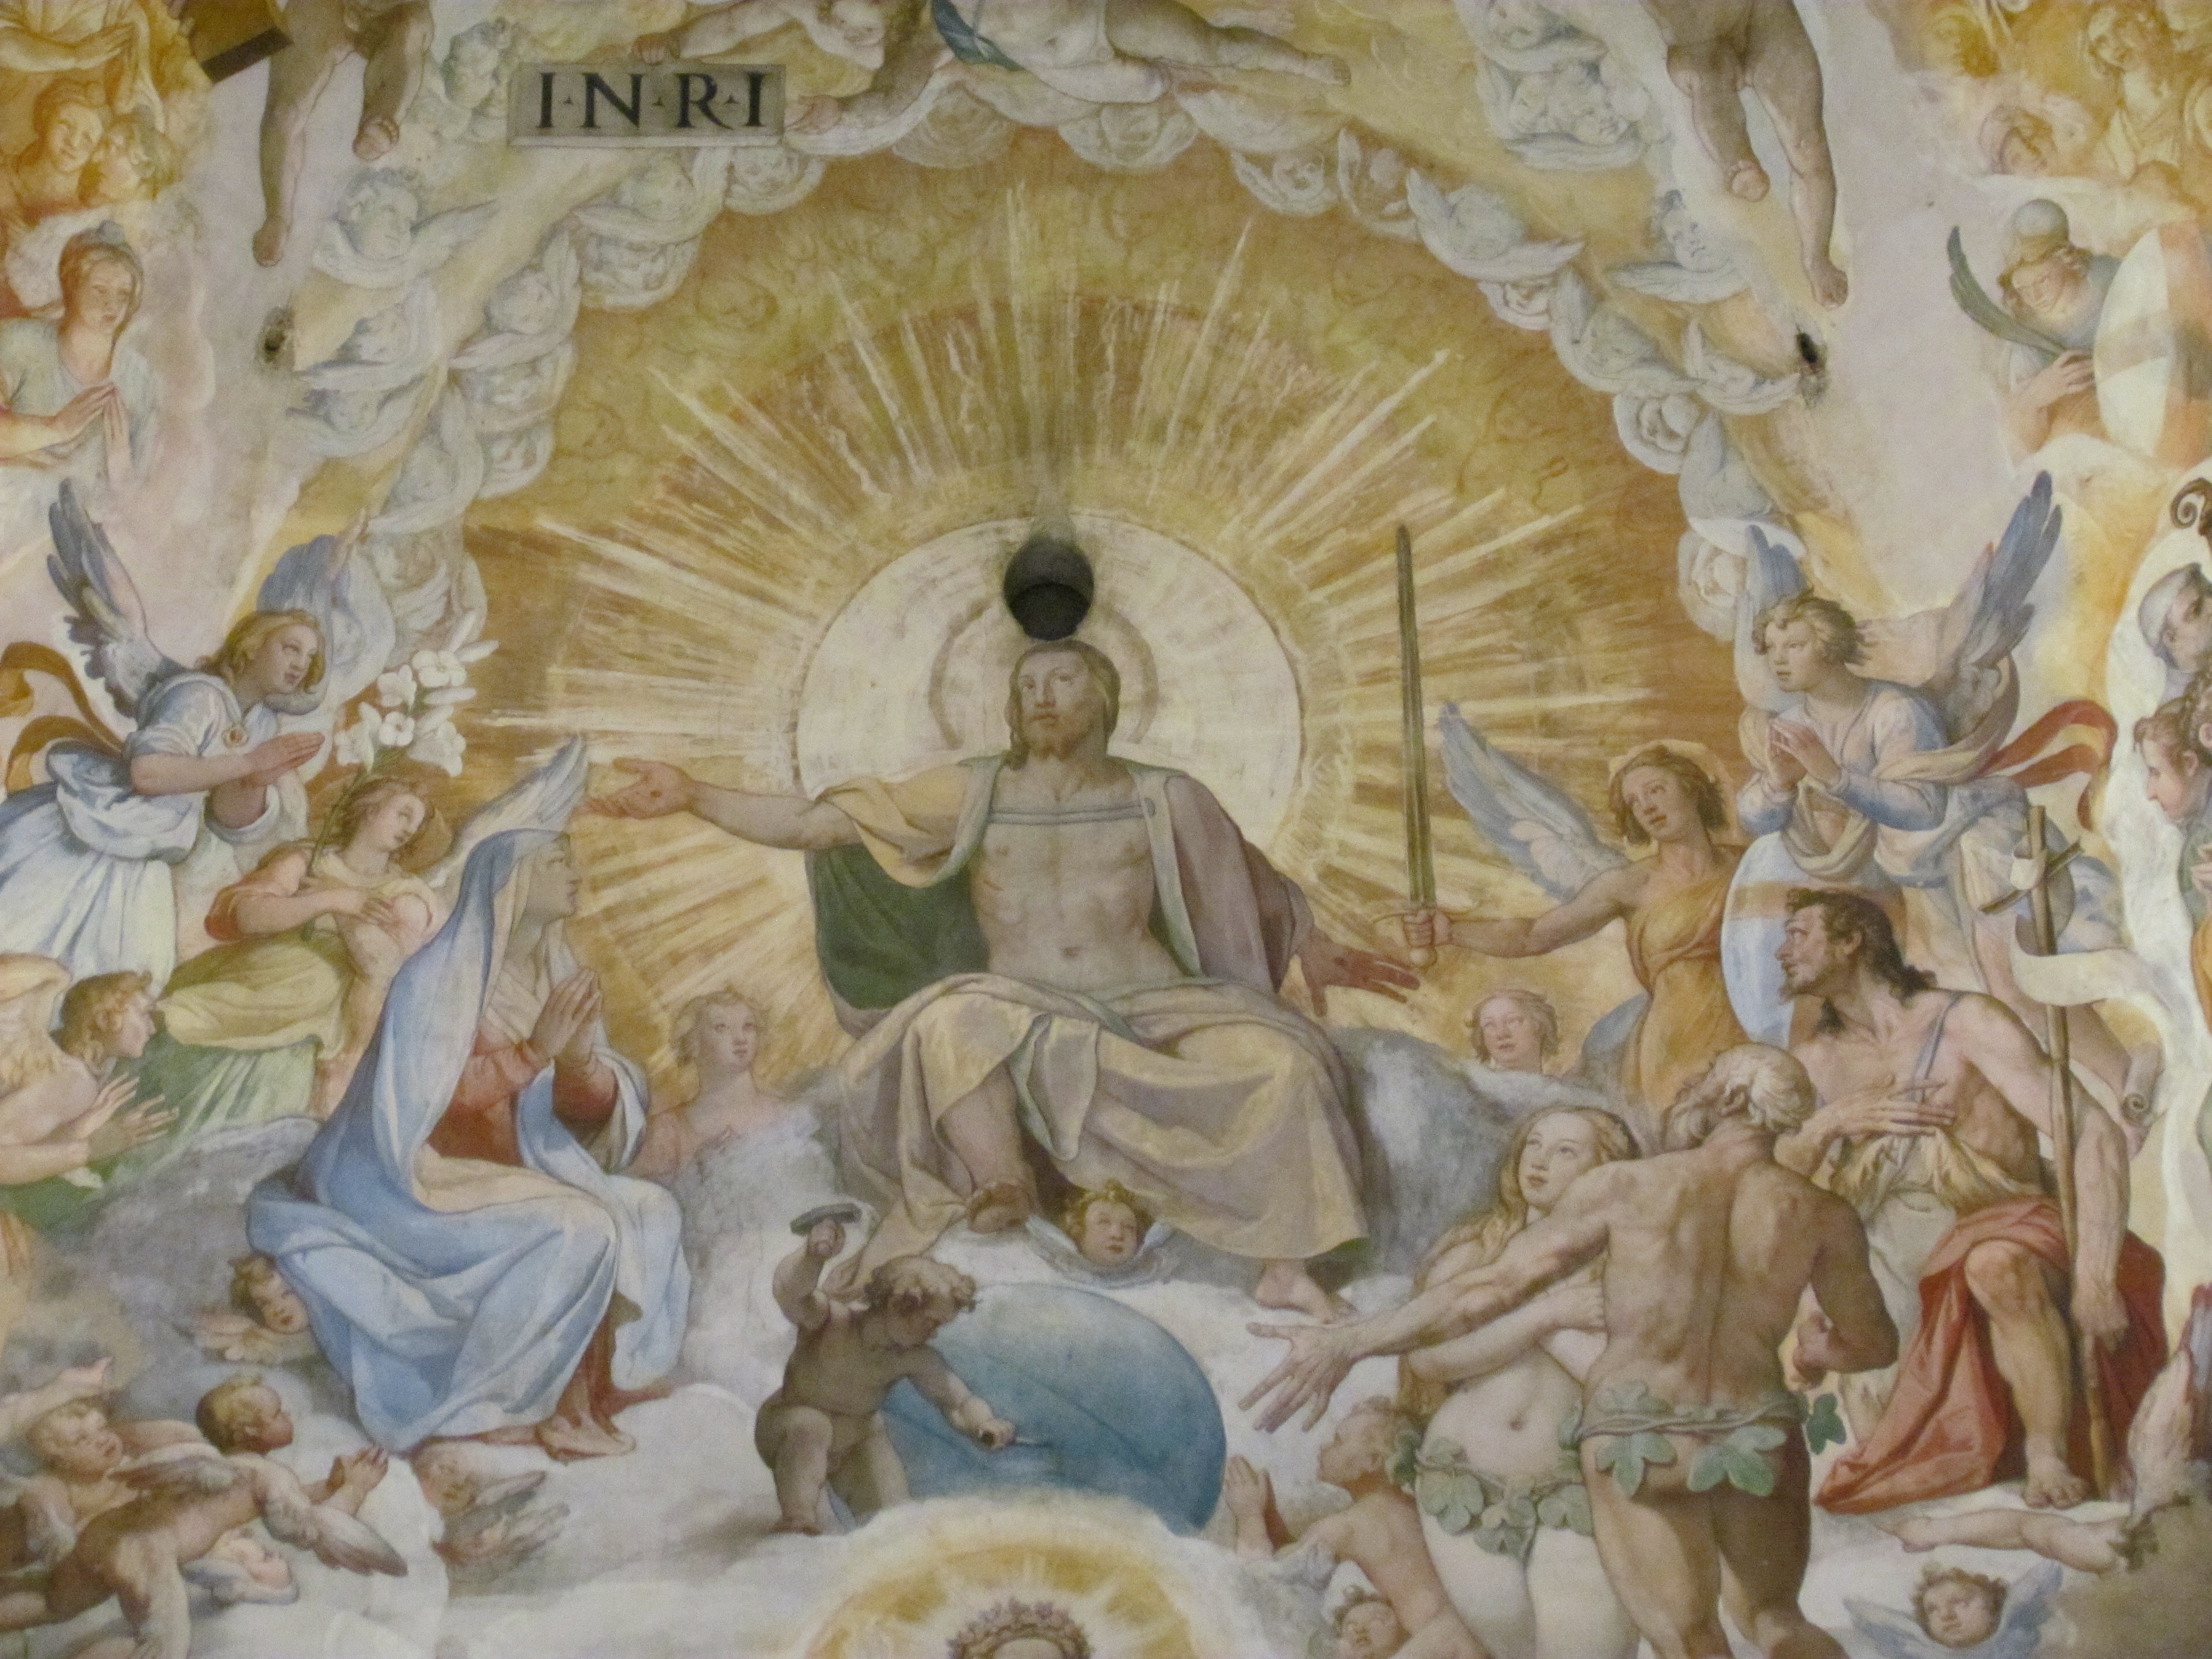 Resultado de imagen de La cúpula de la catedral de Santa María del Fiore.